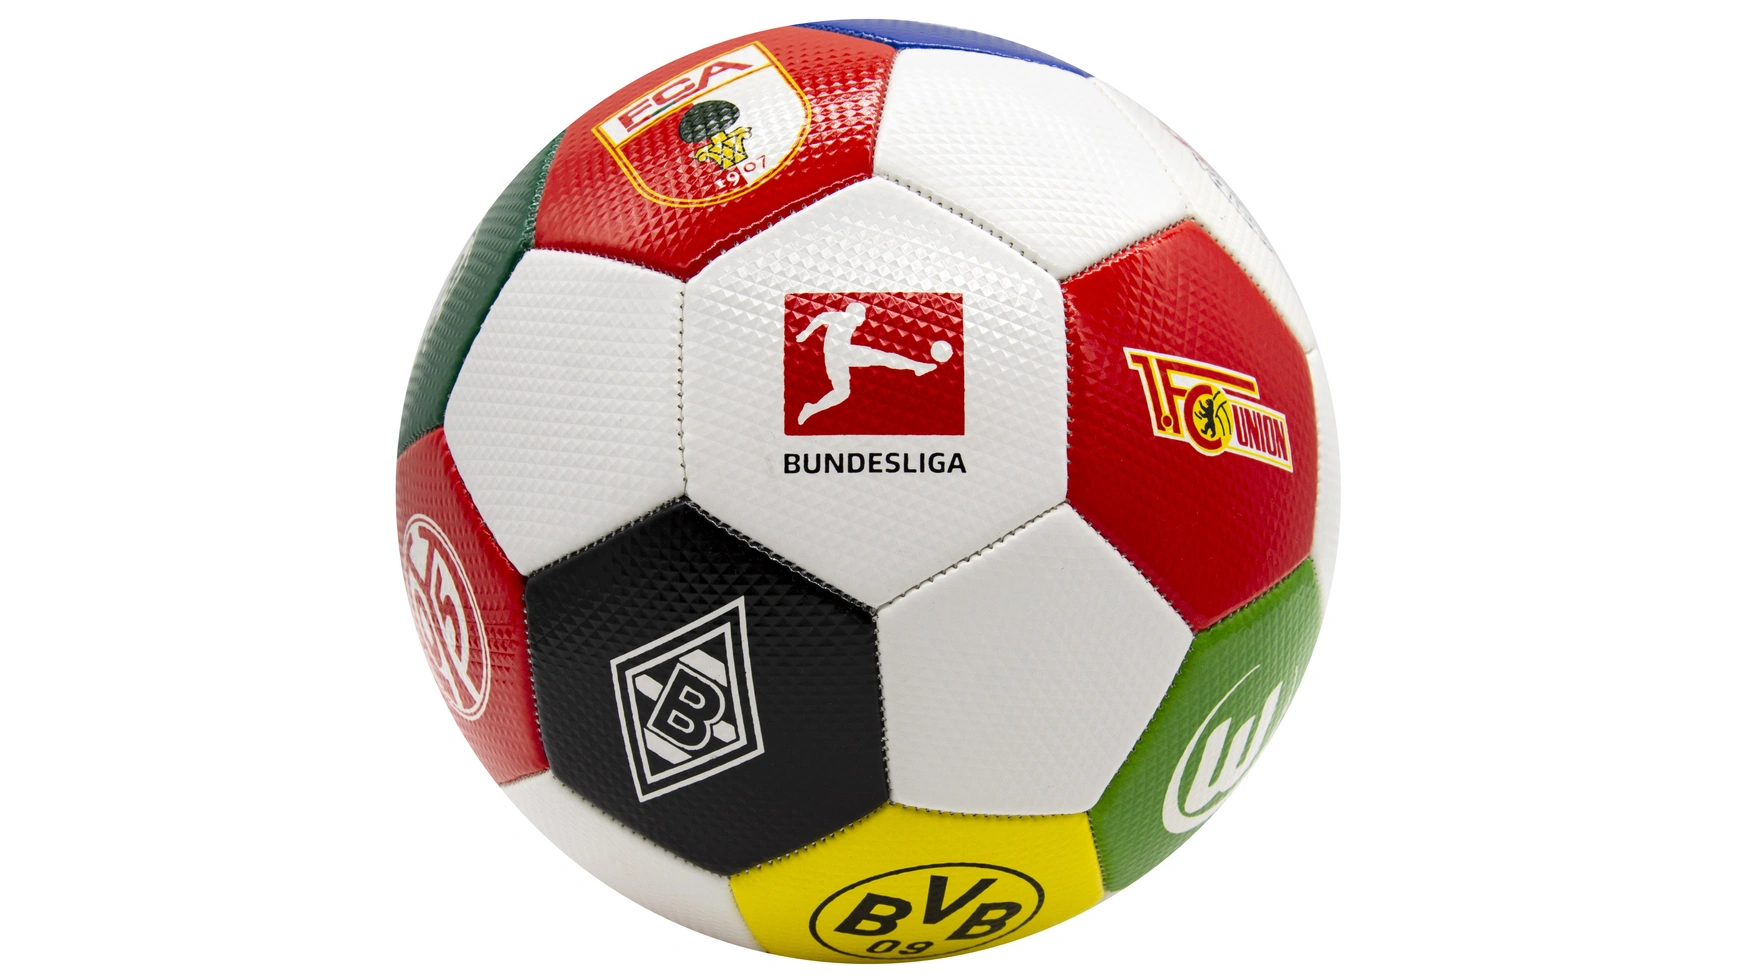 Derbystar Football BUNDESLIGA CLUBLOGO PRO в размере 5 V 23 высококачественный мяч для волейбола стандартный размер 5 мяч из пу для студентов взрослых и подростков тренировочный мяч для соревнован